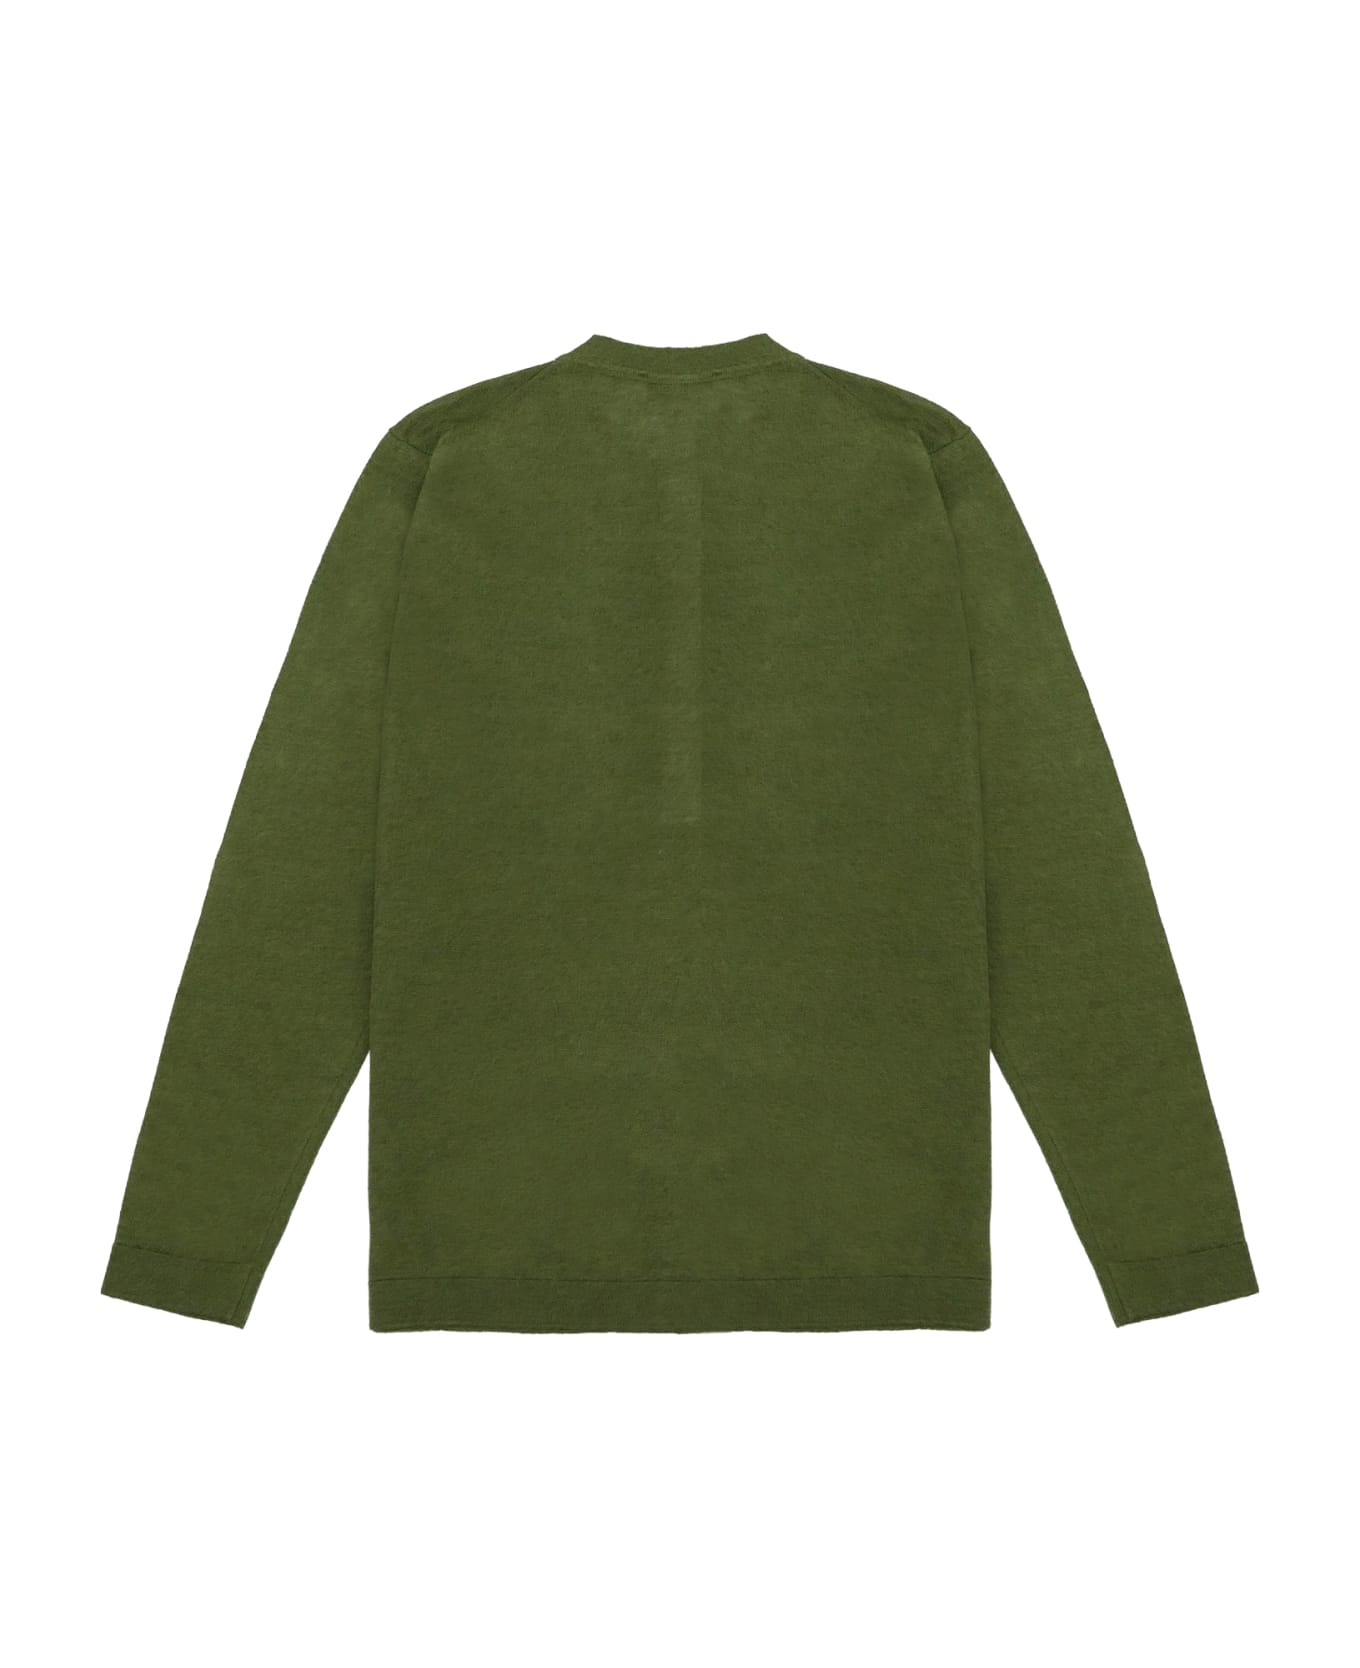 Filippo De Laurentiis Sweater - Green ニットウェア